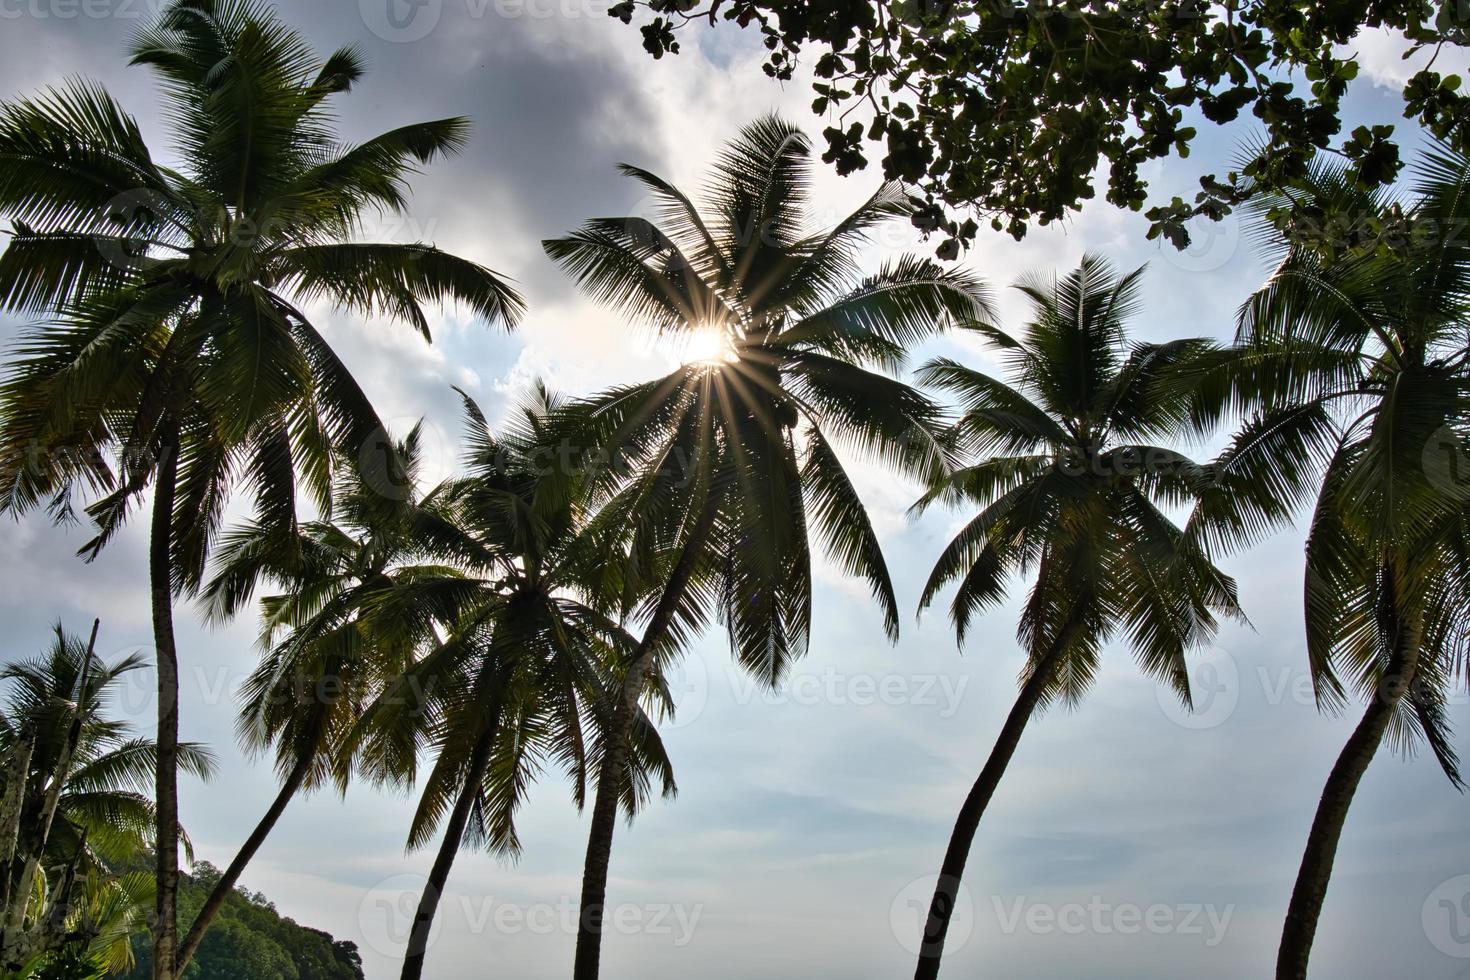 Sol stjärna brista Bakom kokos handflatan träd foto